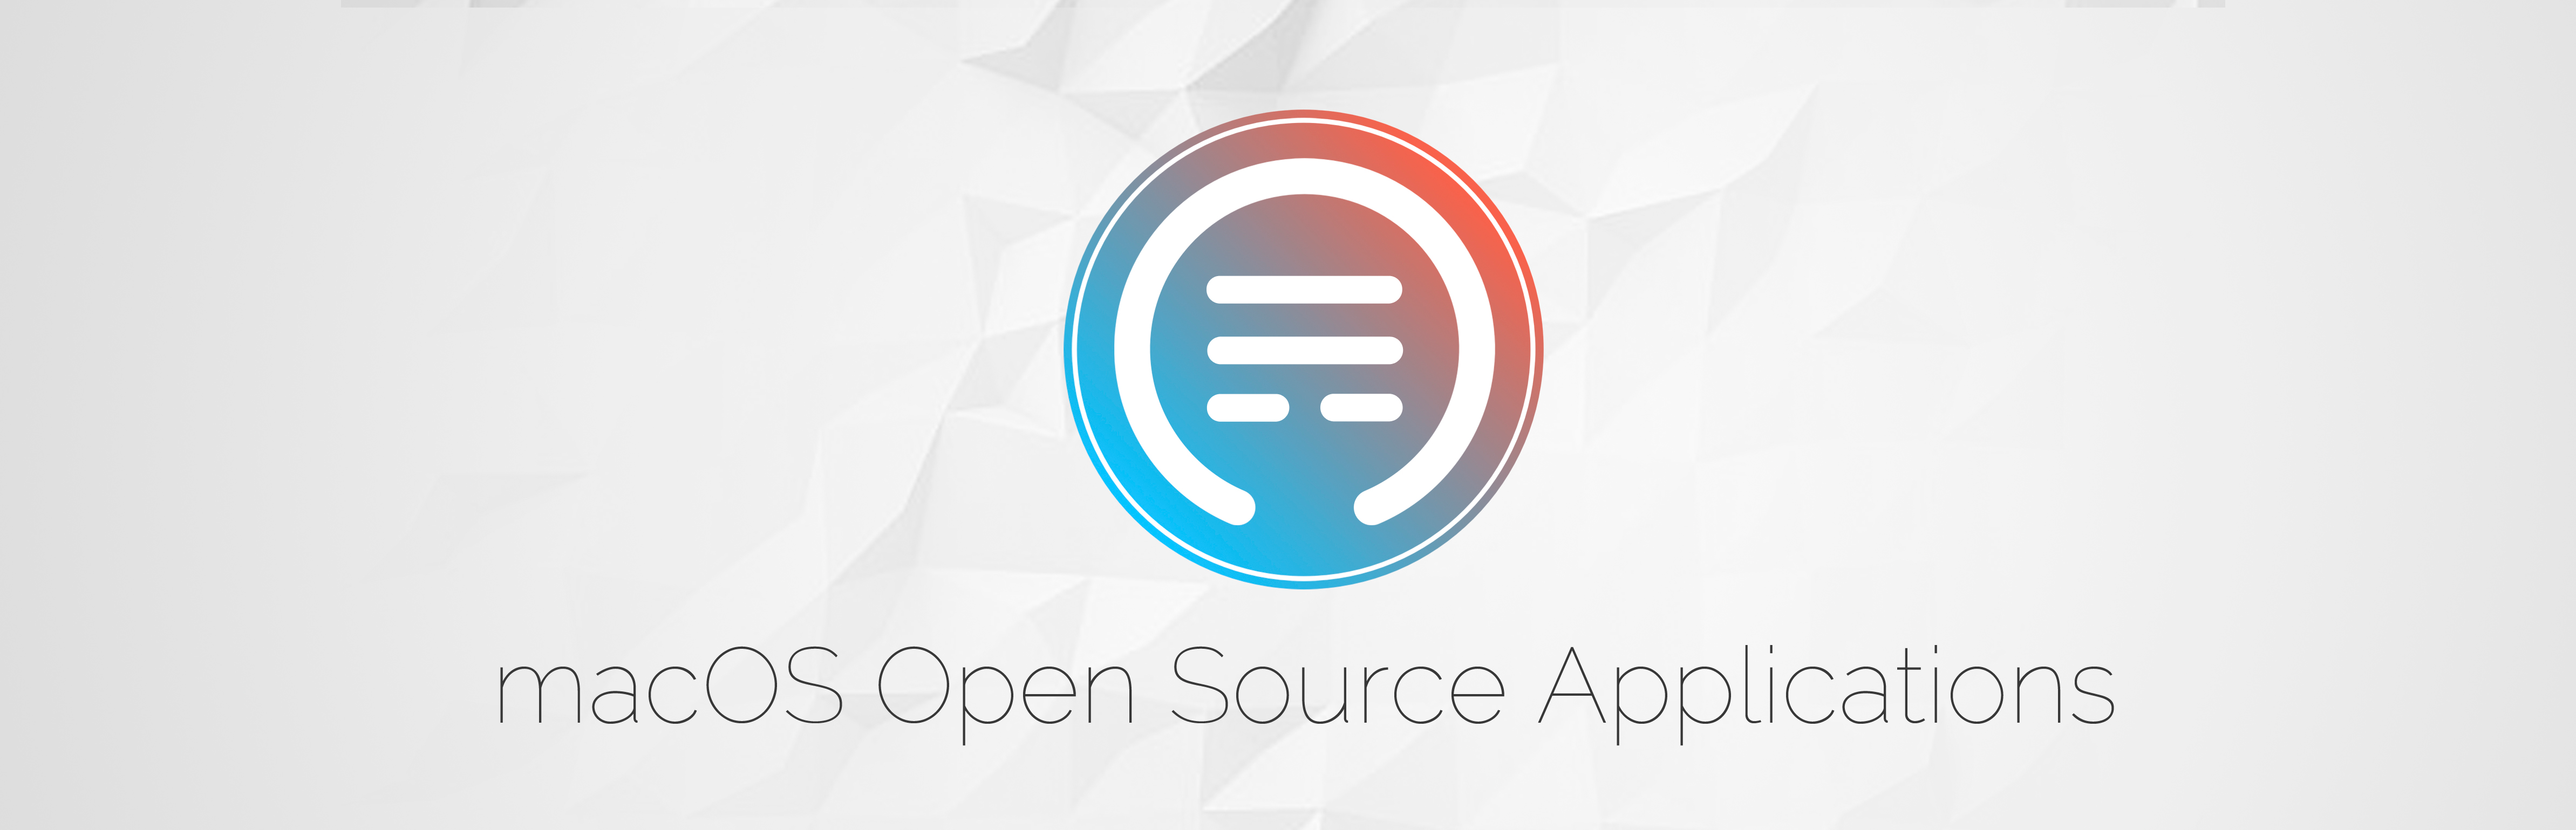 open source macos apps